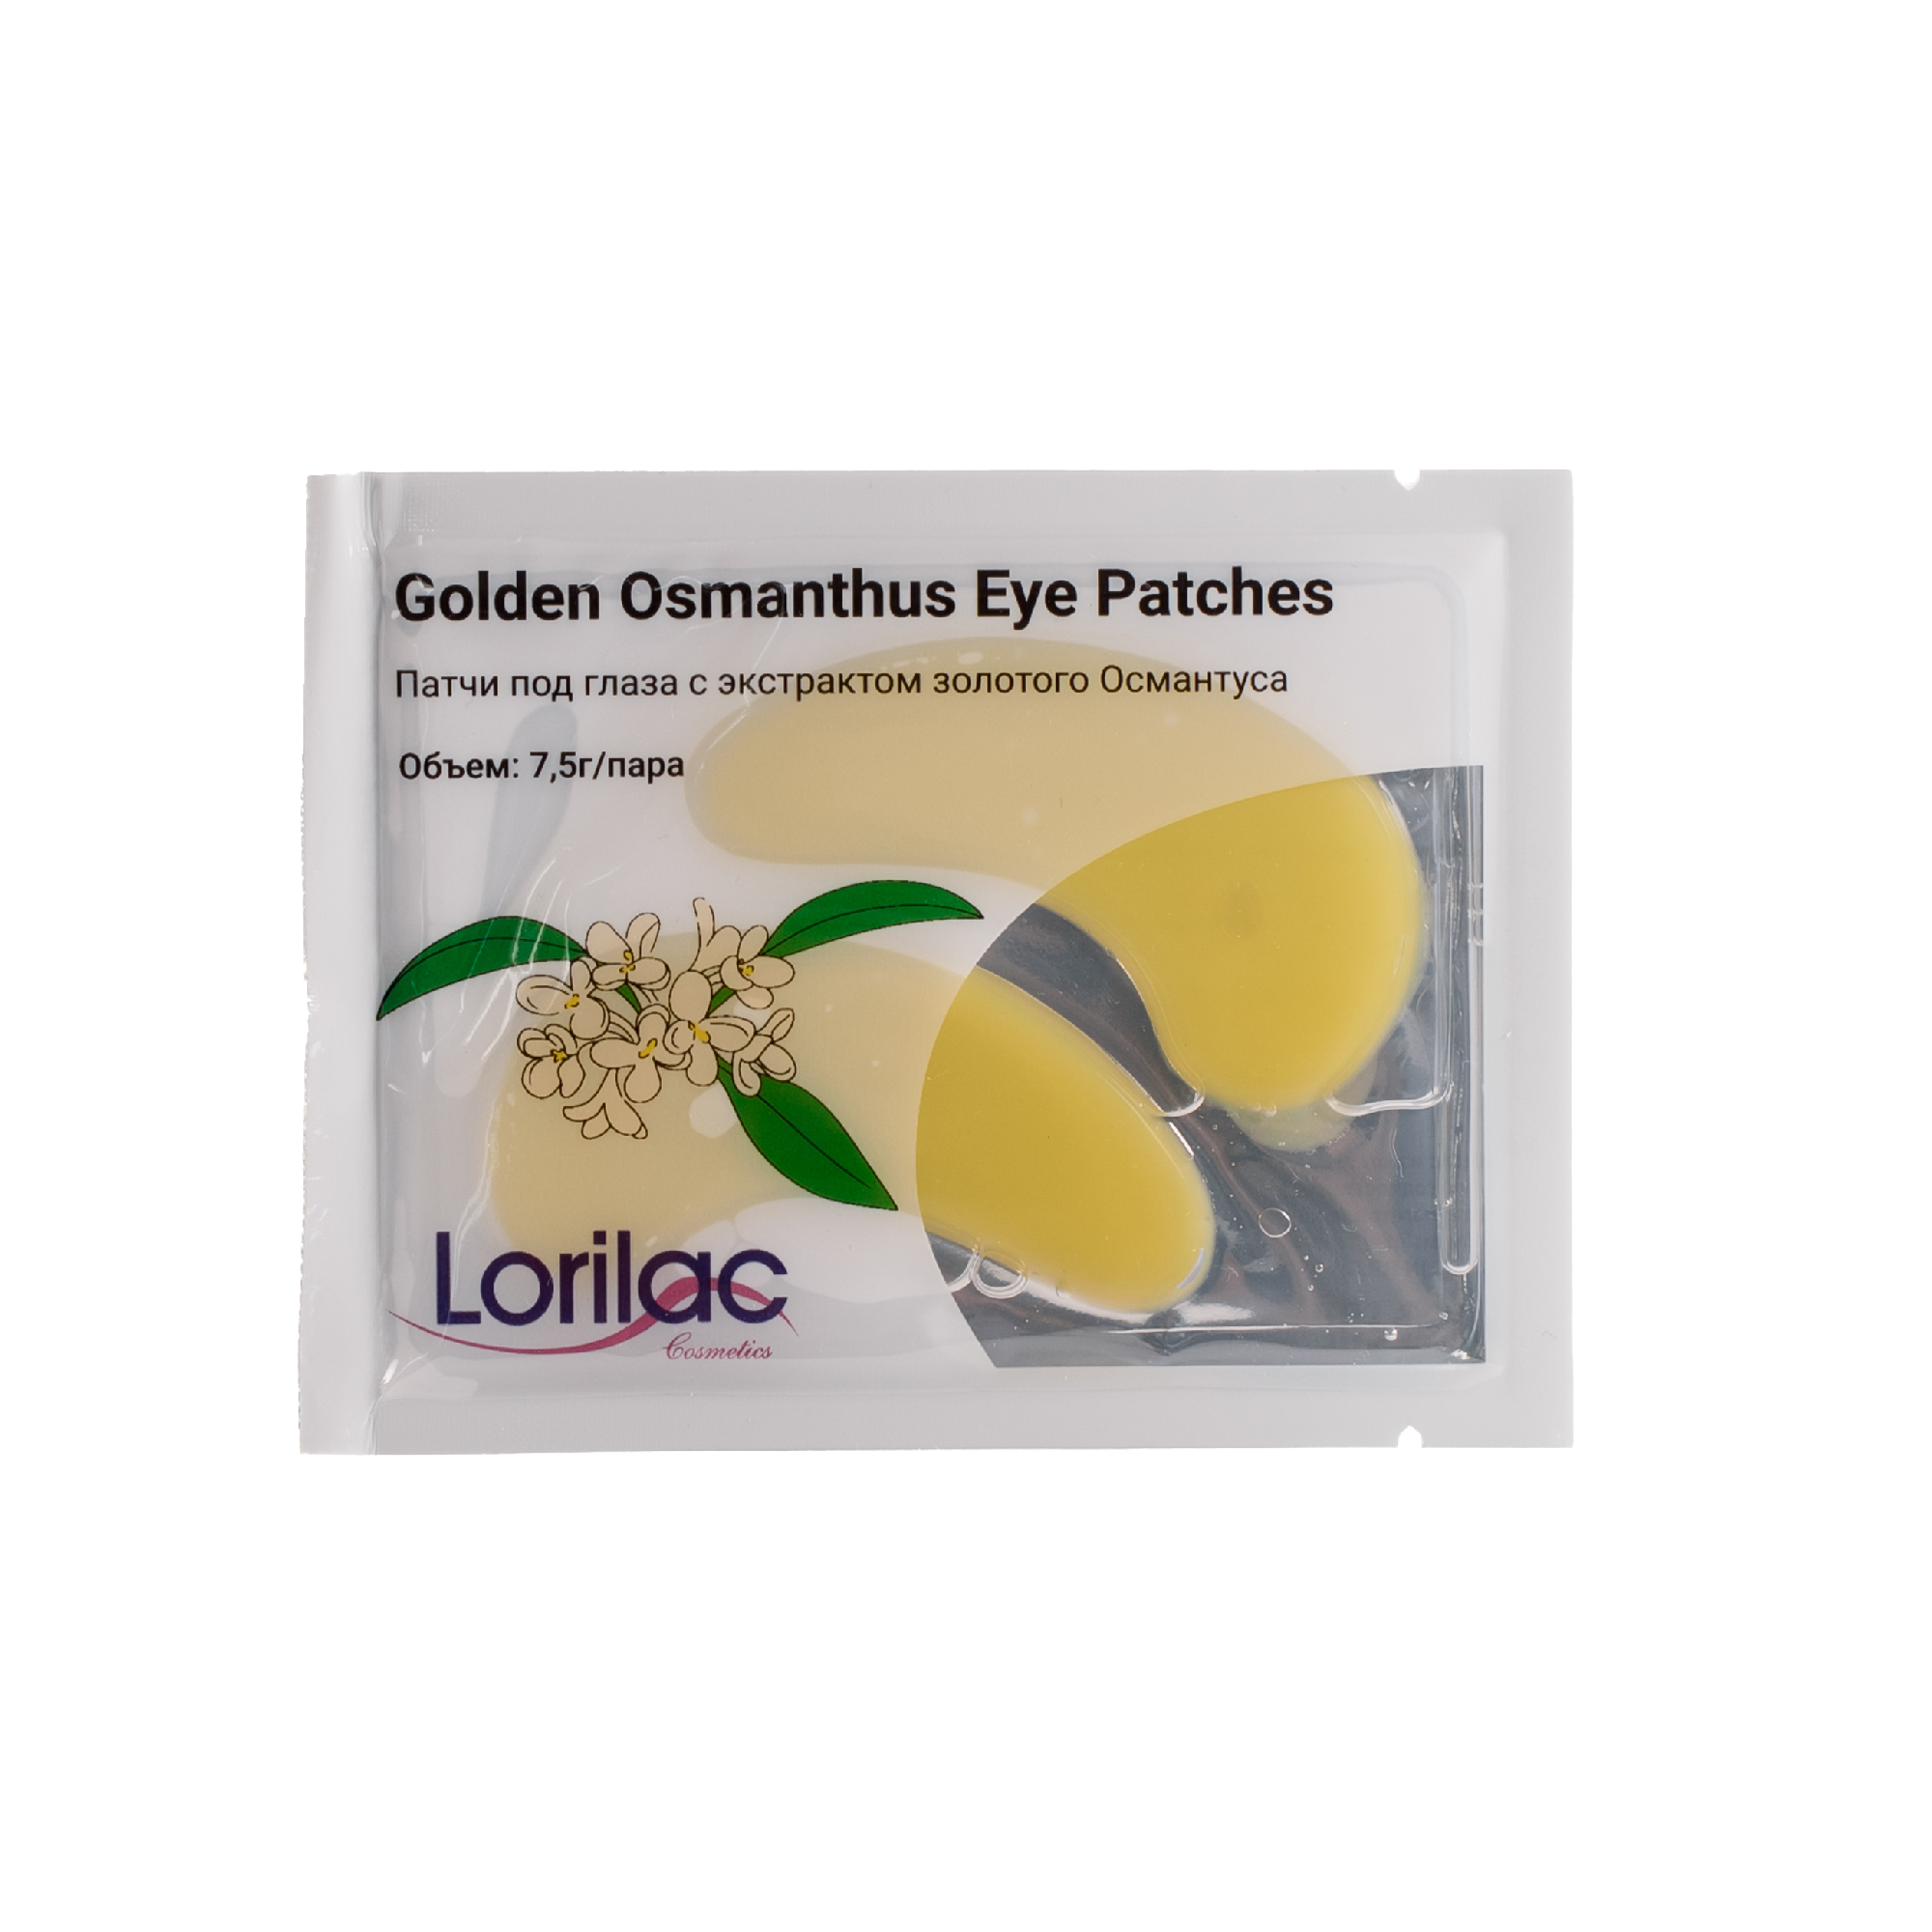 фото Патчи для глаз lorilac с экстрактом золотого османтуса golden osmanthus eye patches